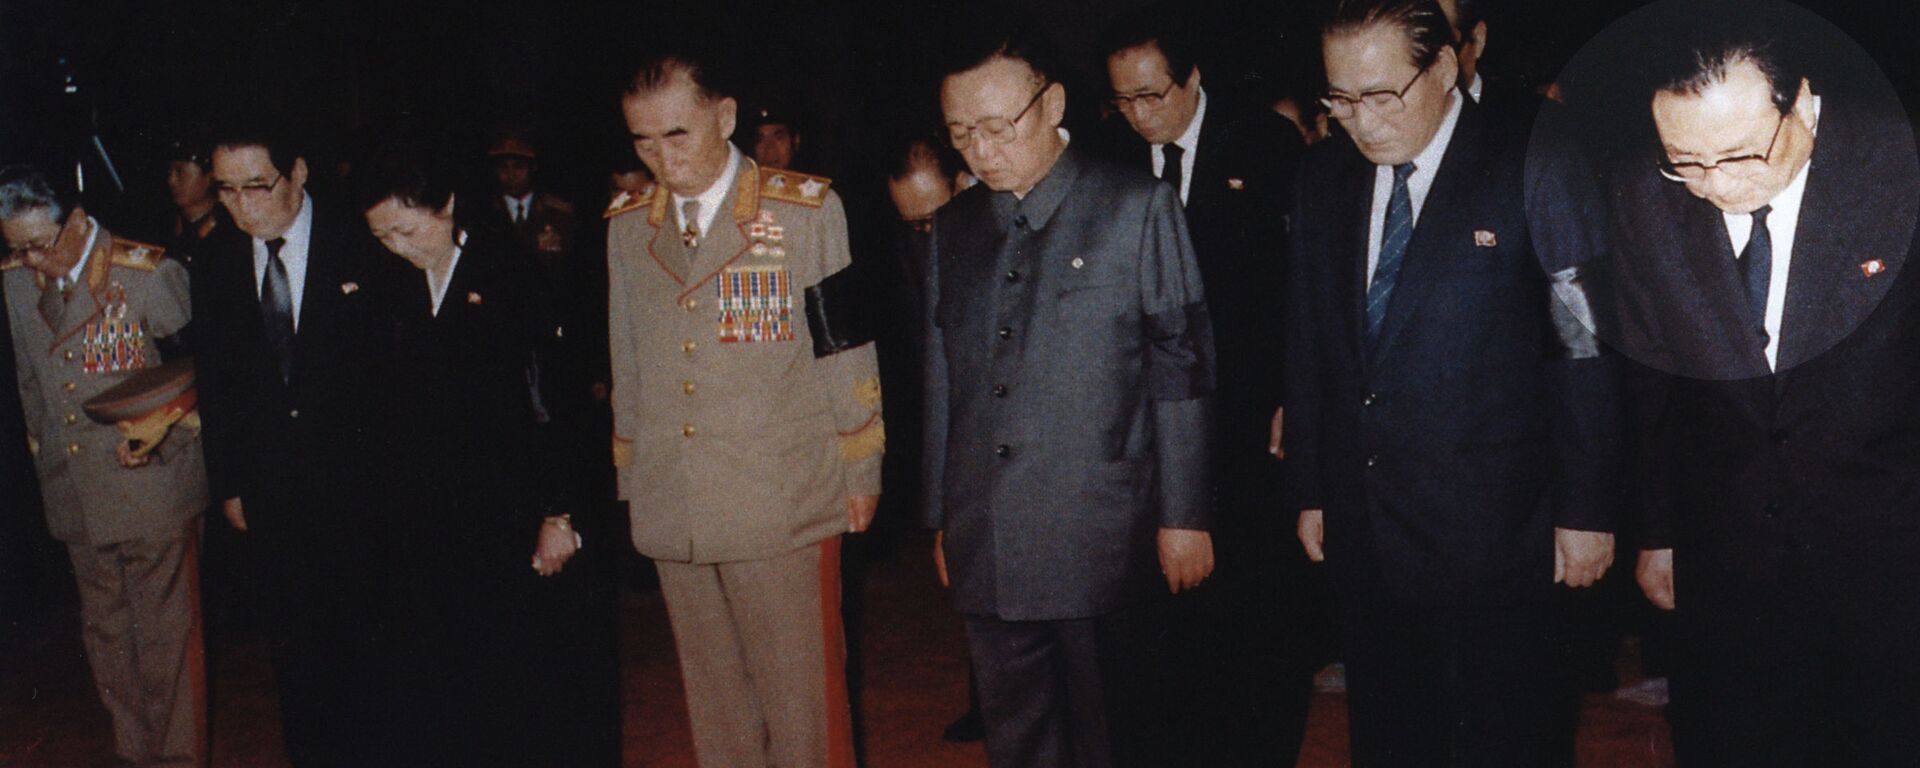 Nhà lãnh đạo CHDCND Triều Tiên Kim Kim Jong Il bên em trai Kim Yong -Ju (ngoài cùng bên phải), năm 1994 - Sputnik Việt Nam, 1920, 15.12.2021